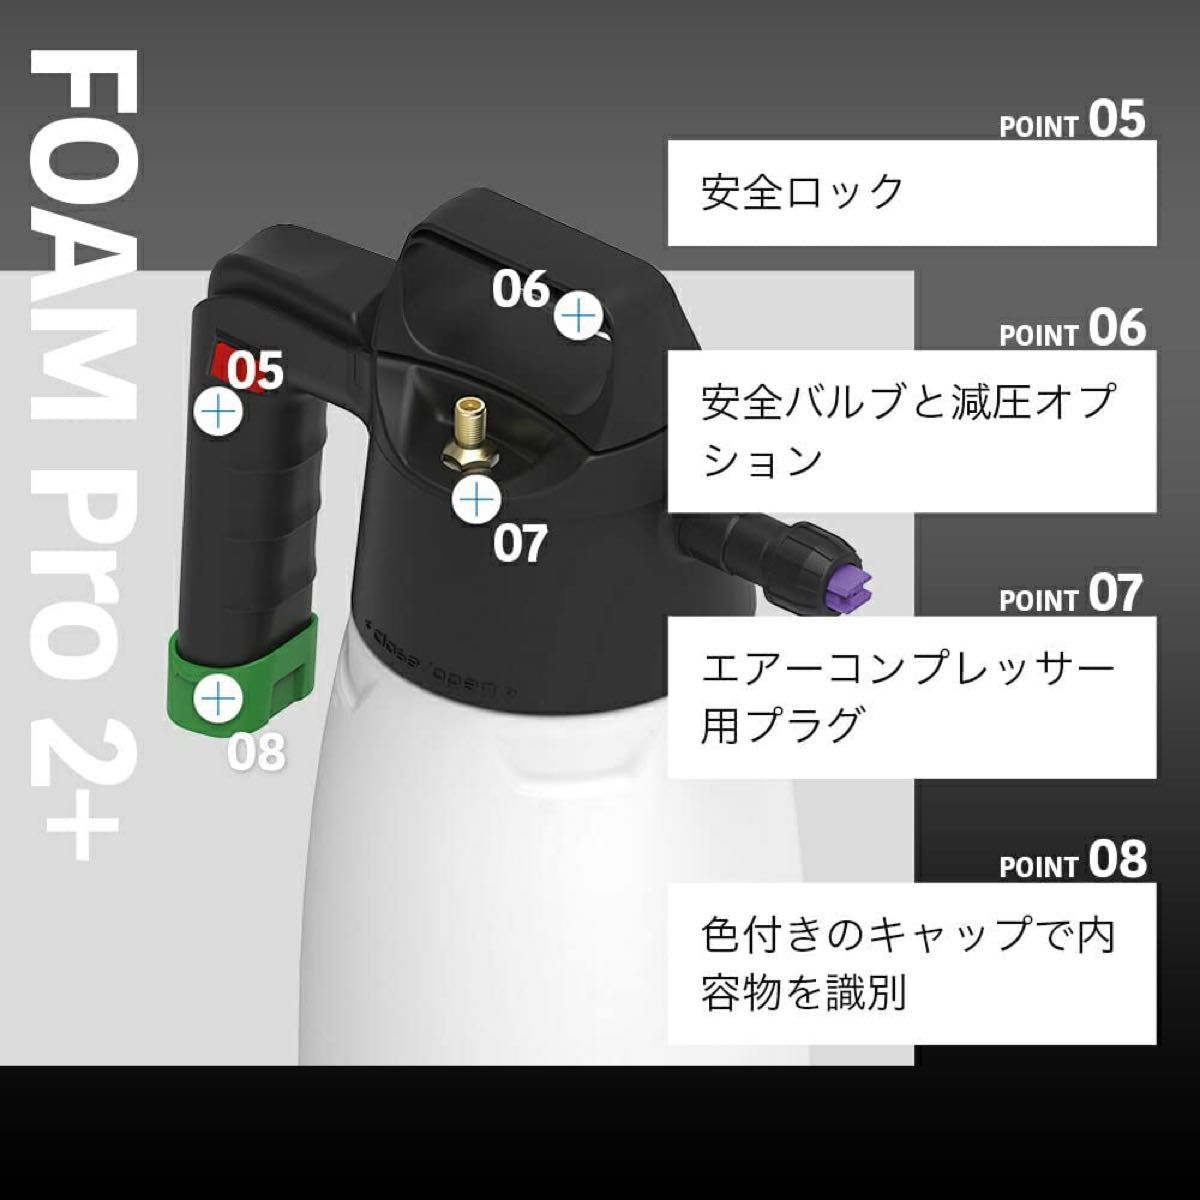 【 日本正規品 】 iK アイケイ フォームプロ2プラス ポンプスプレー 蓄圧式スプレー 噴霧器 洗車 日本語説明書付き  